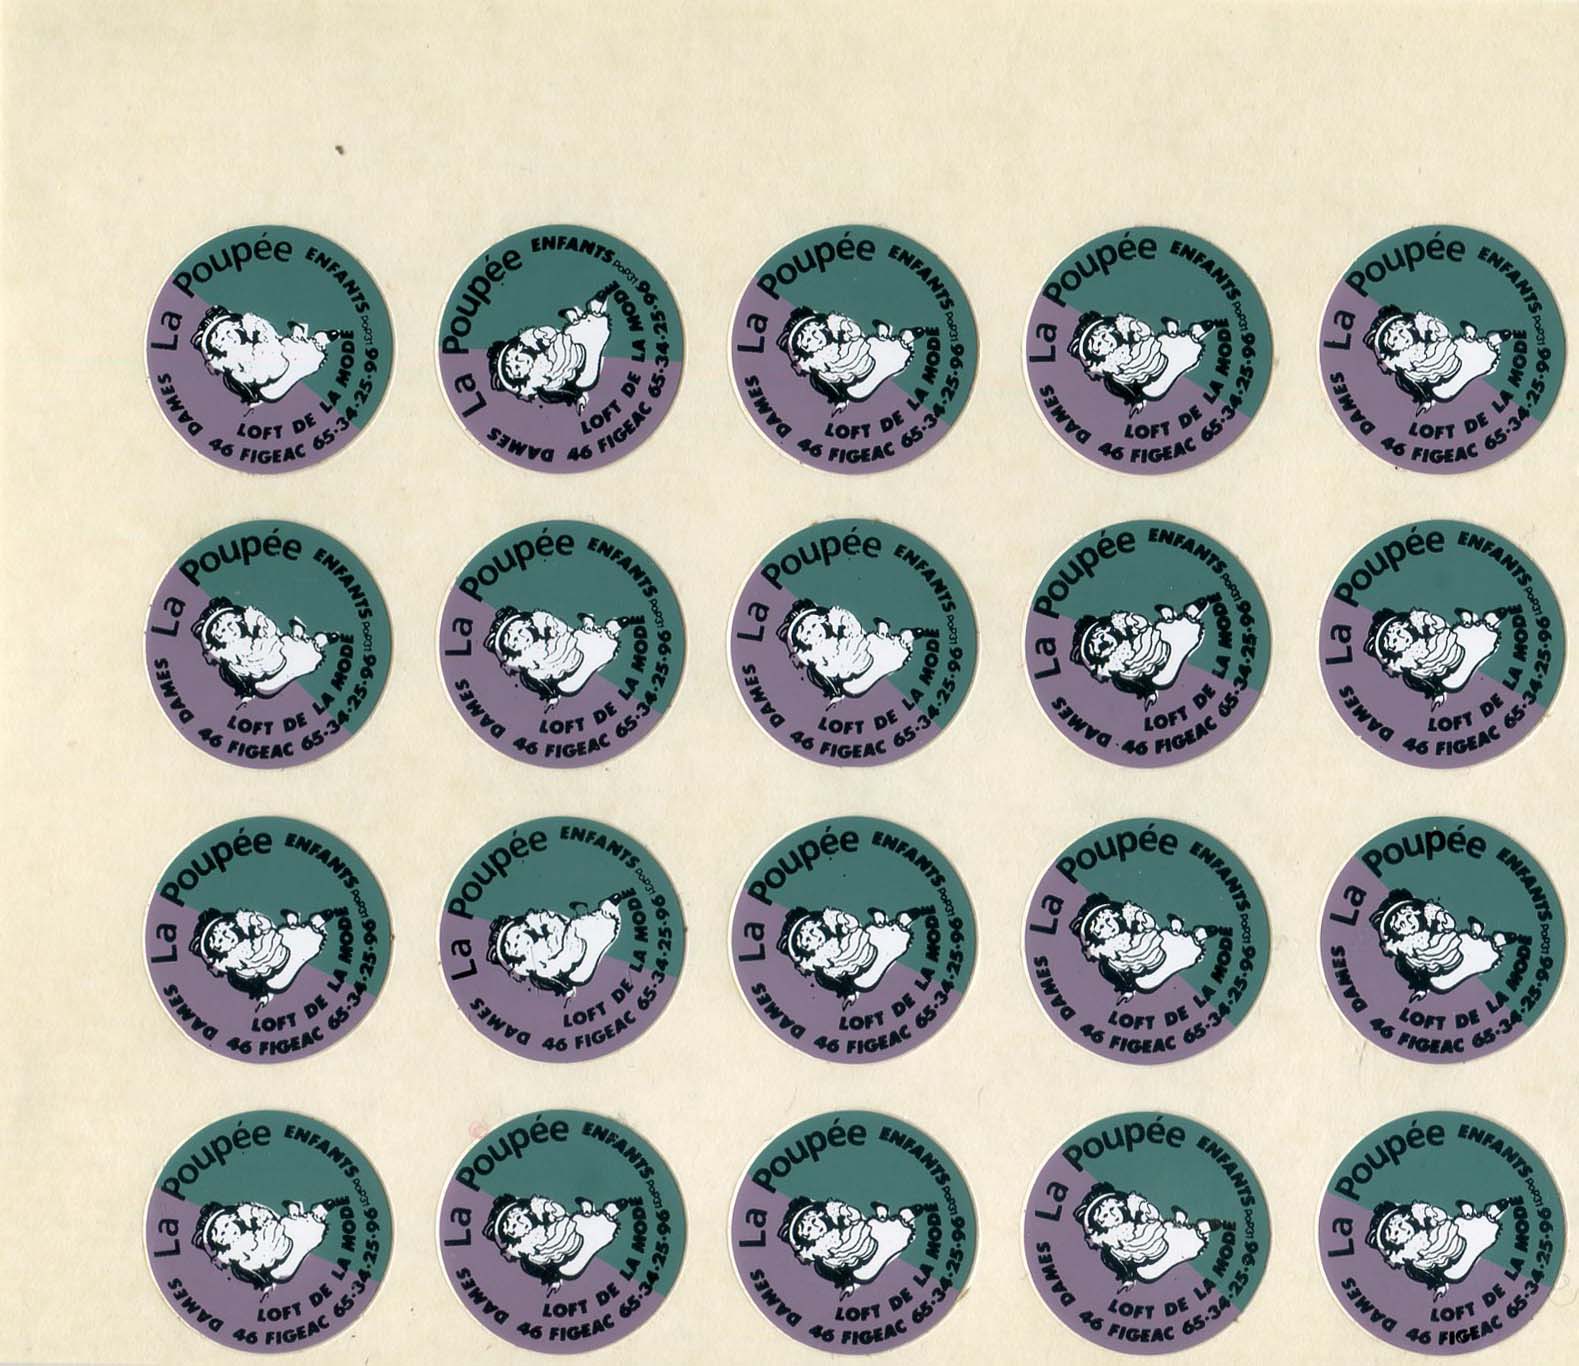 Fragment de feuille d'impression portant 20 autocollants La Poupée - Loft de la mode - Dames - Enfants - 46 Figeac - 65.34.25.96, nom d'imprimeur JAC au dos.